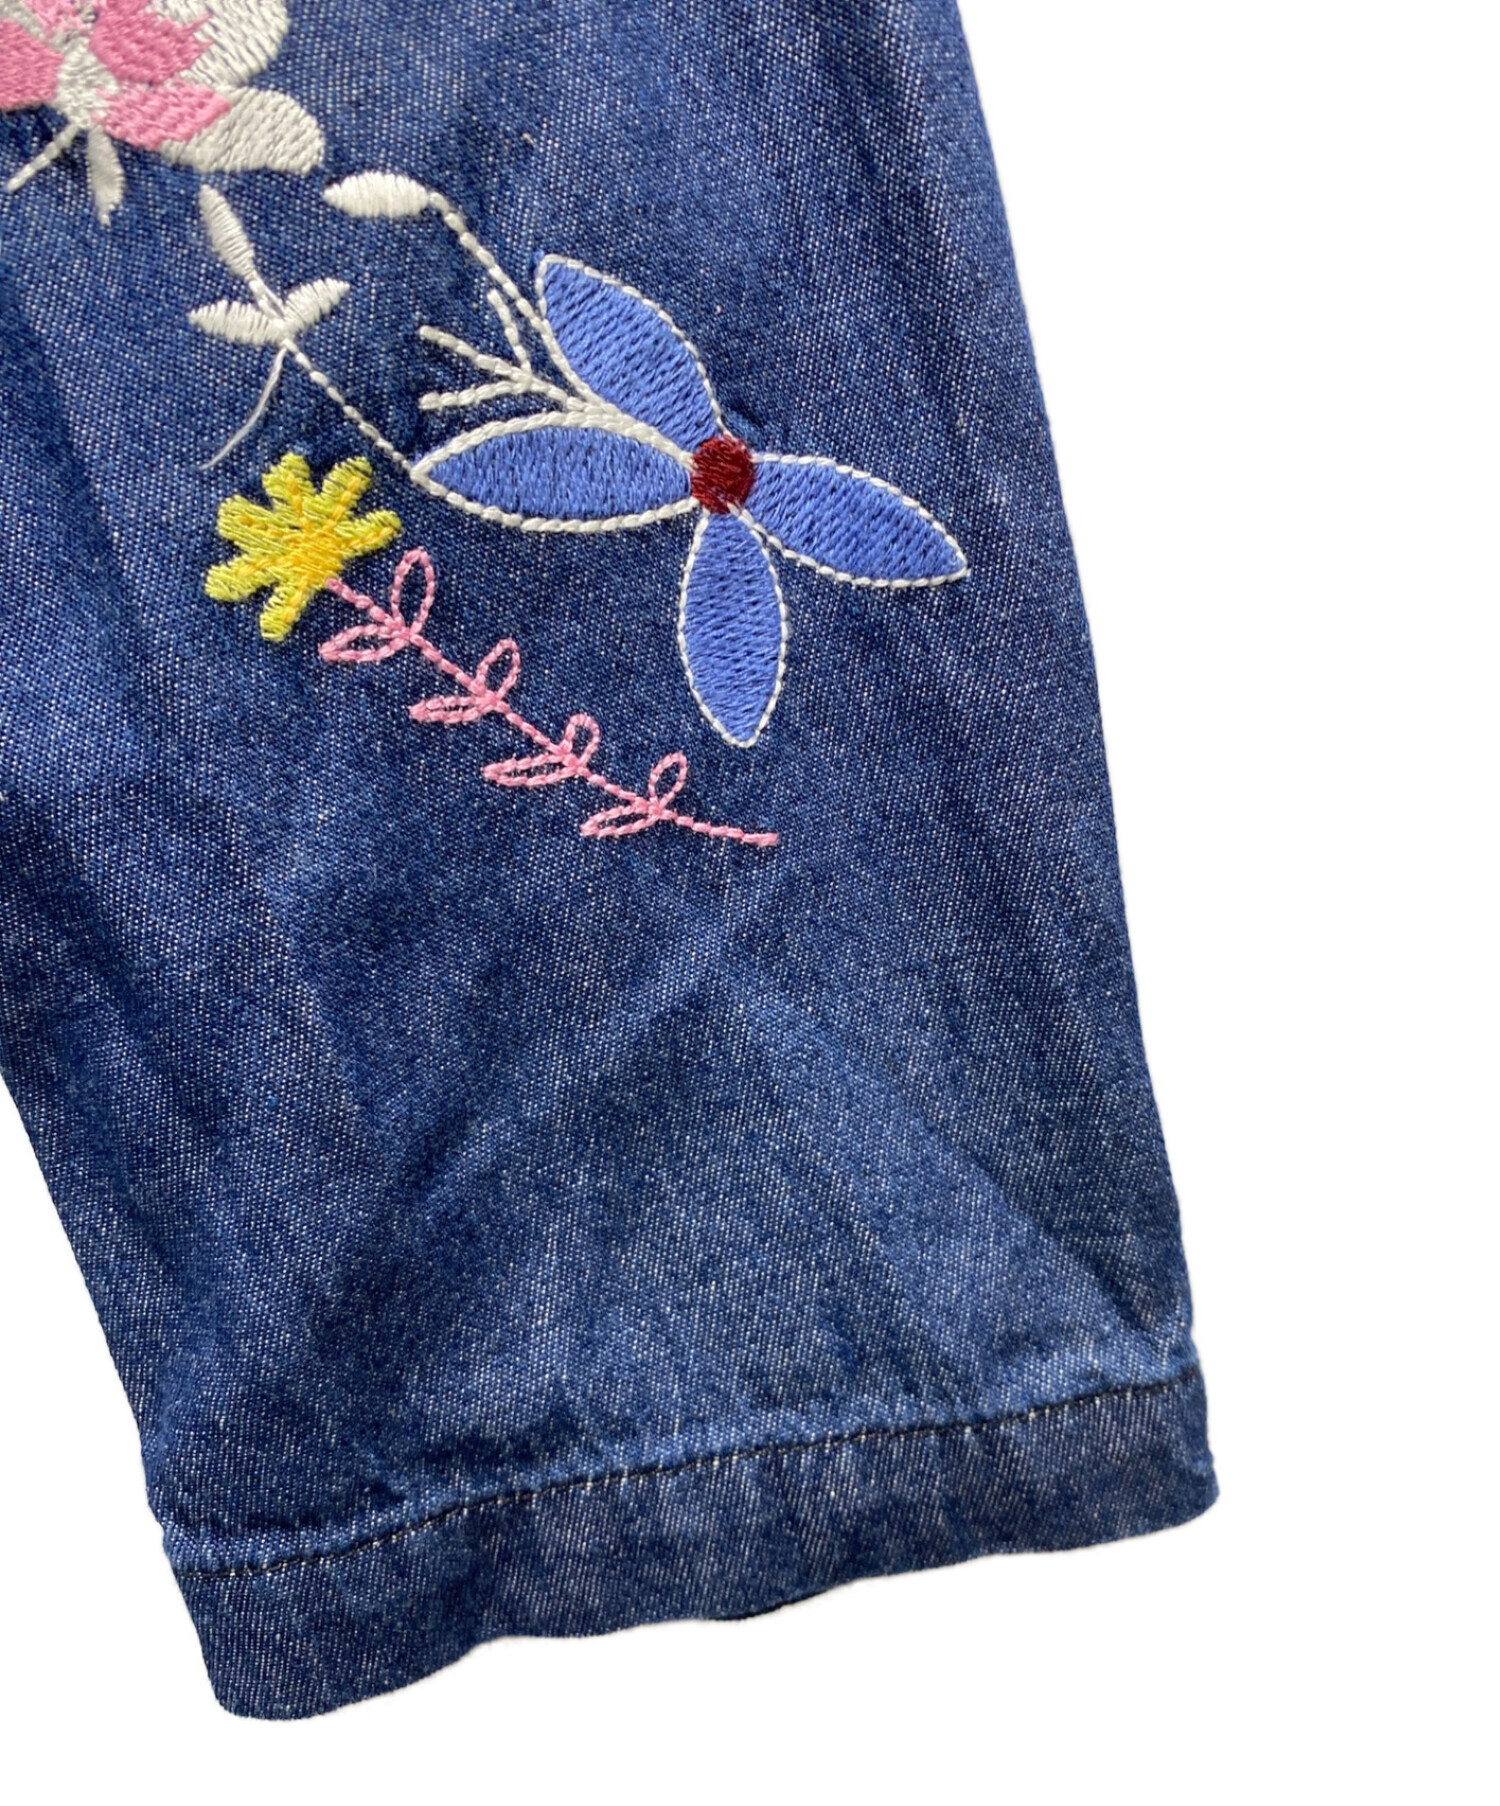 Engineered Garments (エンジニアド ガーメンツ) Denim Floral Embroidery ワークジャケット インディゴ  サイズ:M